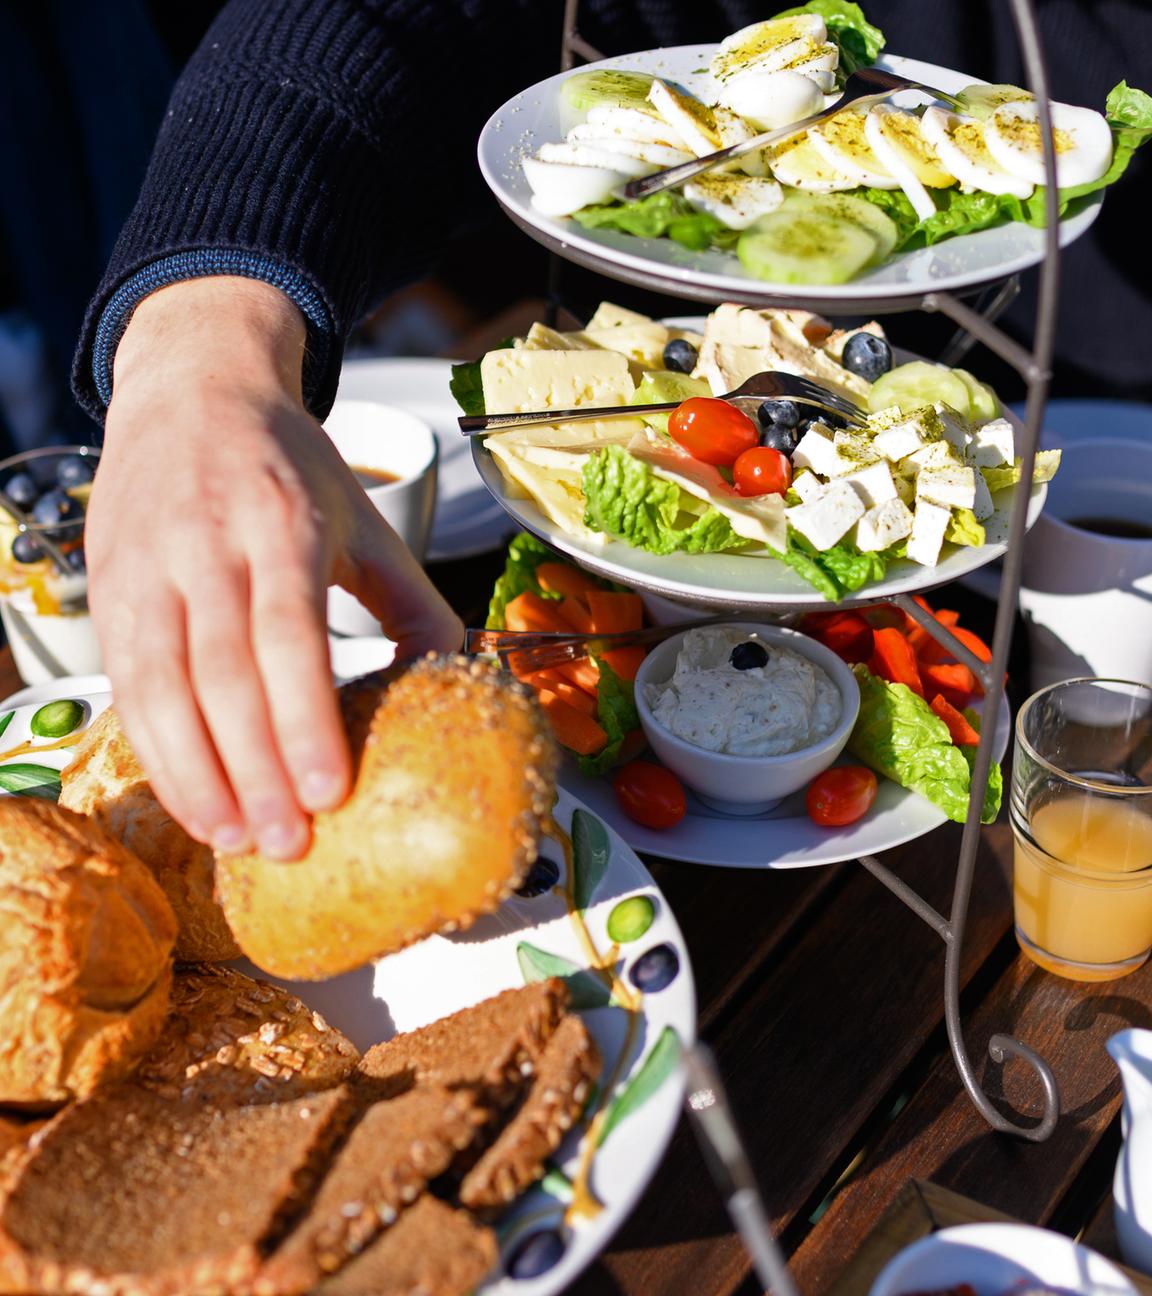 Eine Schale mit Brötchen und Brot steht neben Aufstrichen und Käse, Eiern und Salat auf einem Frühstückstisch, aufgenommen am 05.03.2022